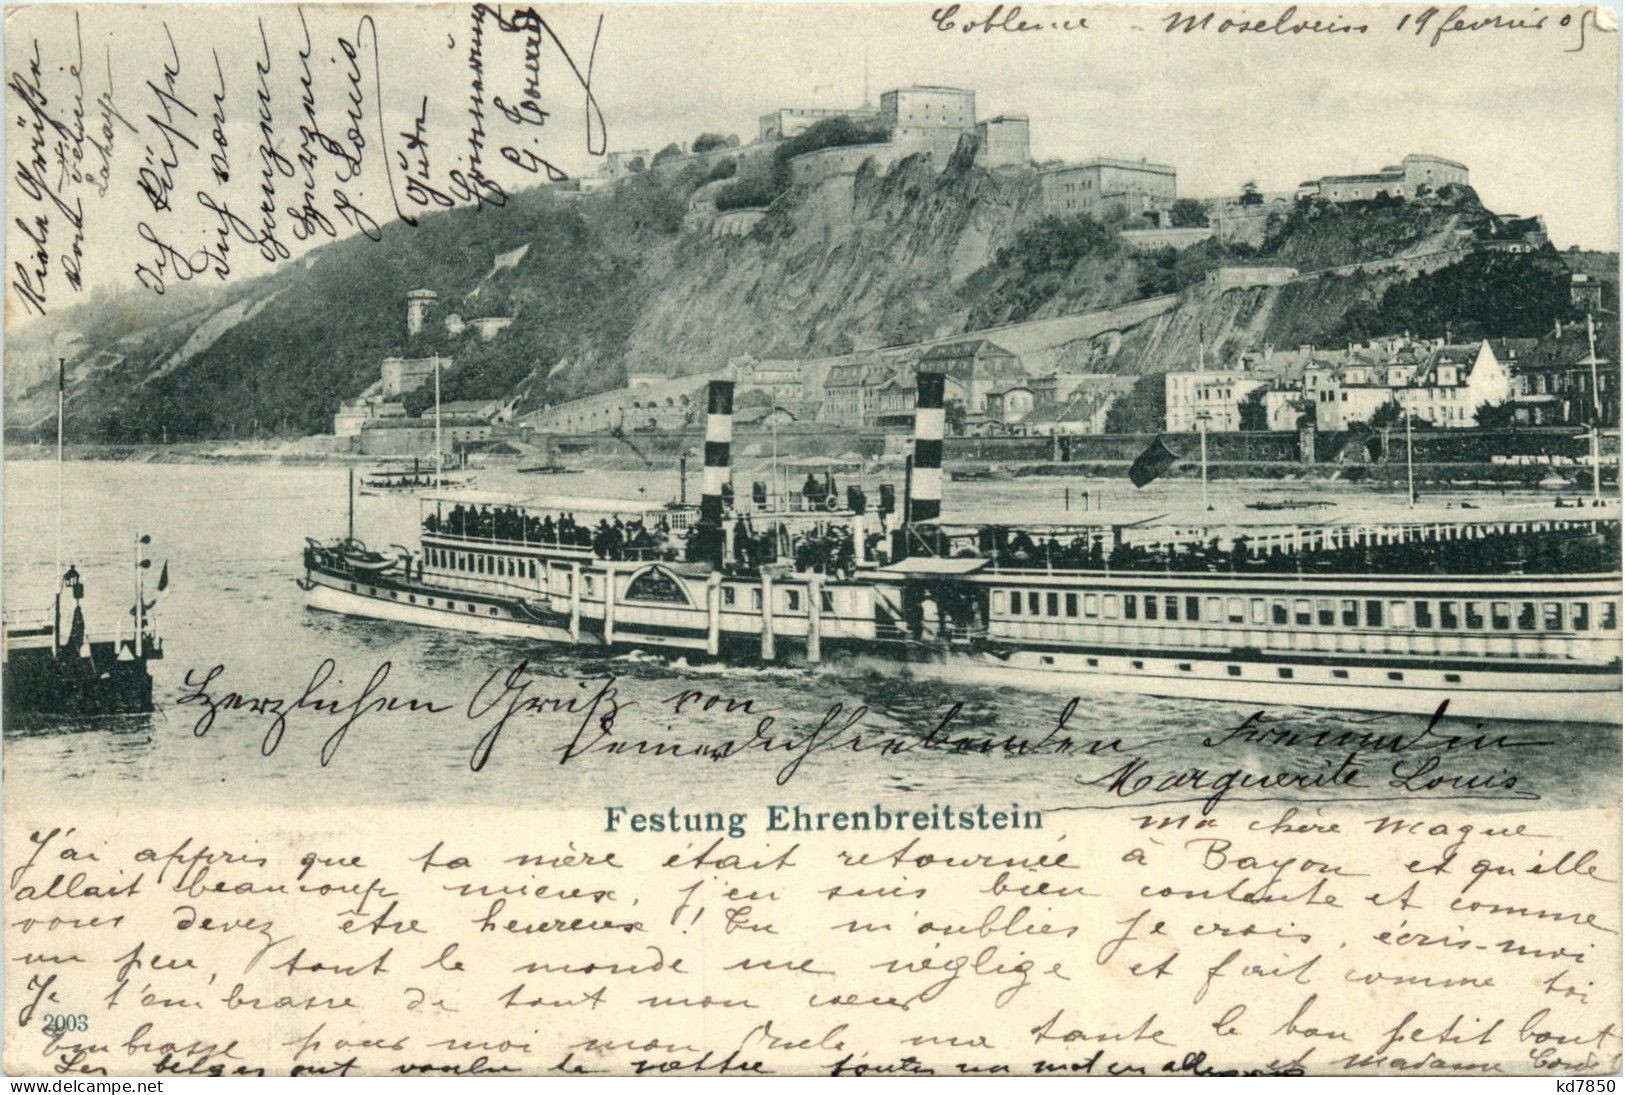 Festung Ehrenbreitstein - Koblenz